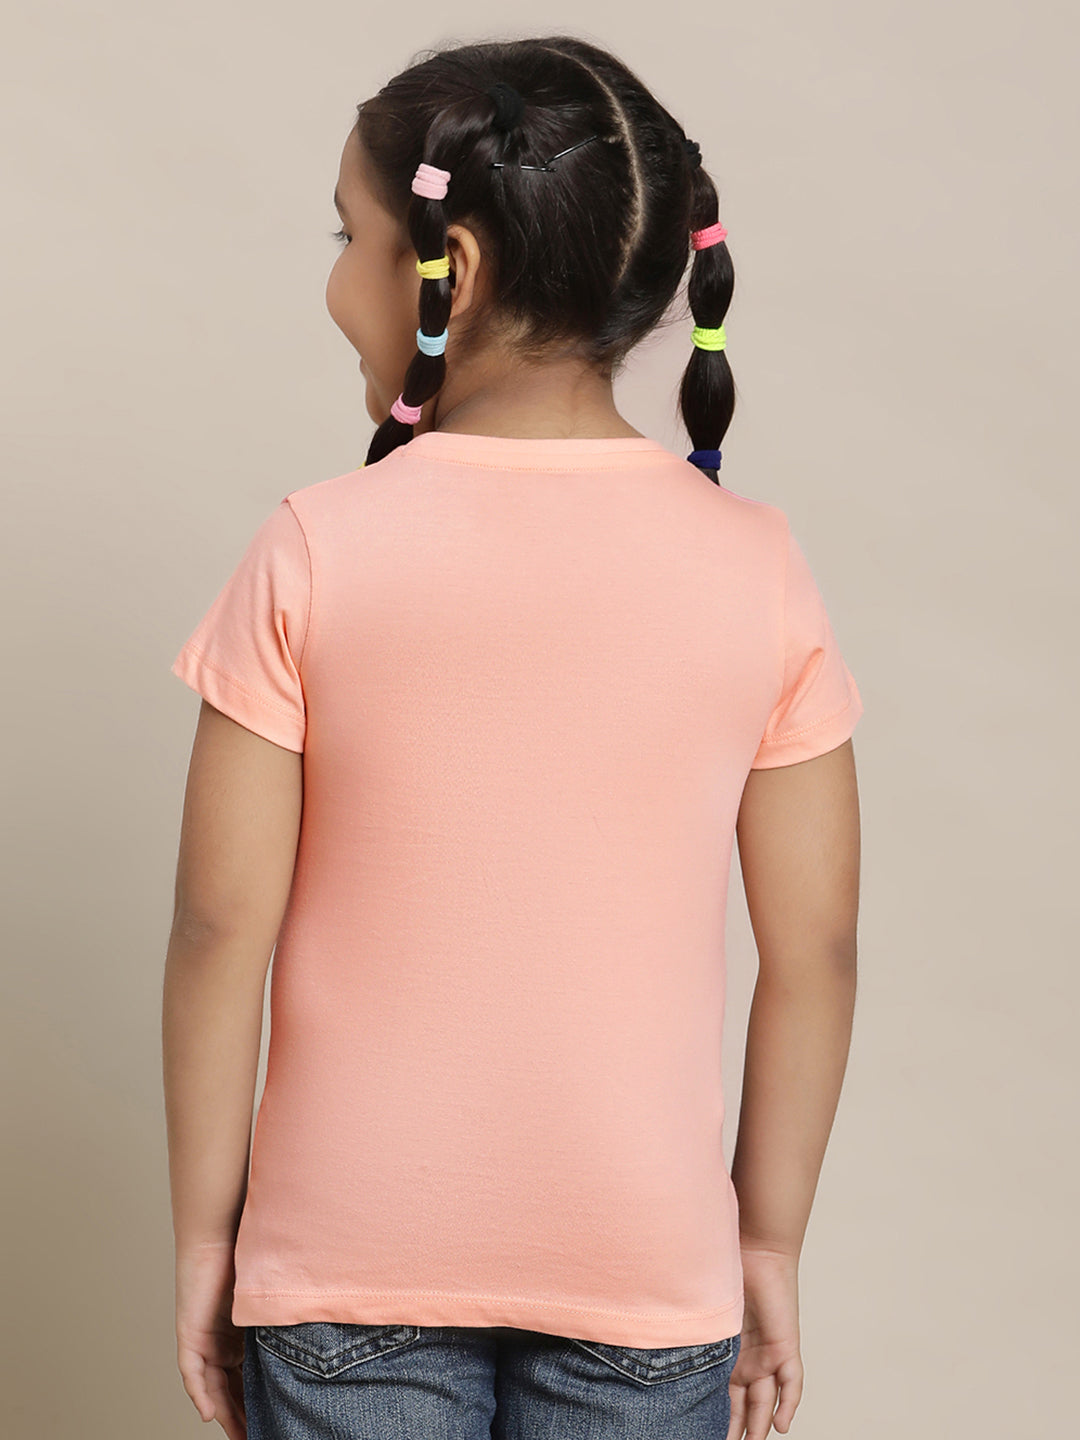 Kidsville Frozen 2 Printed Orange Tshirt For Girls